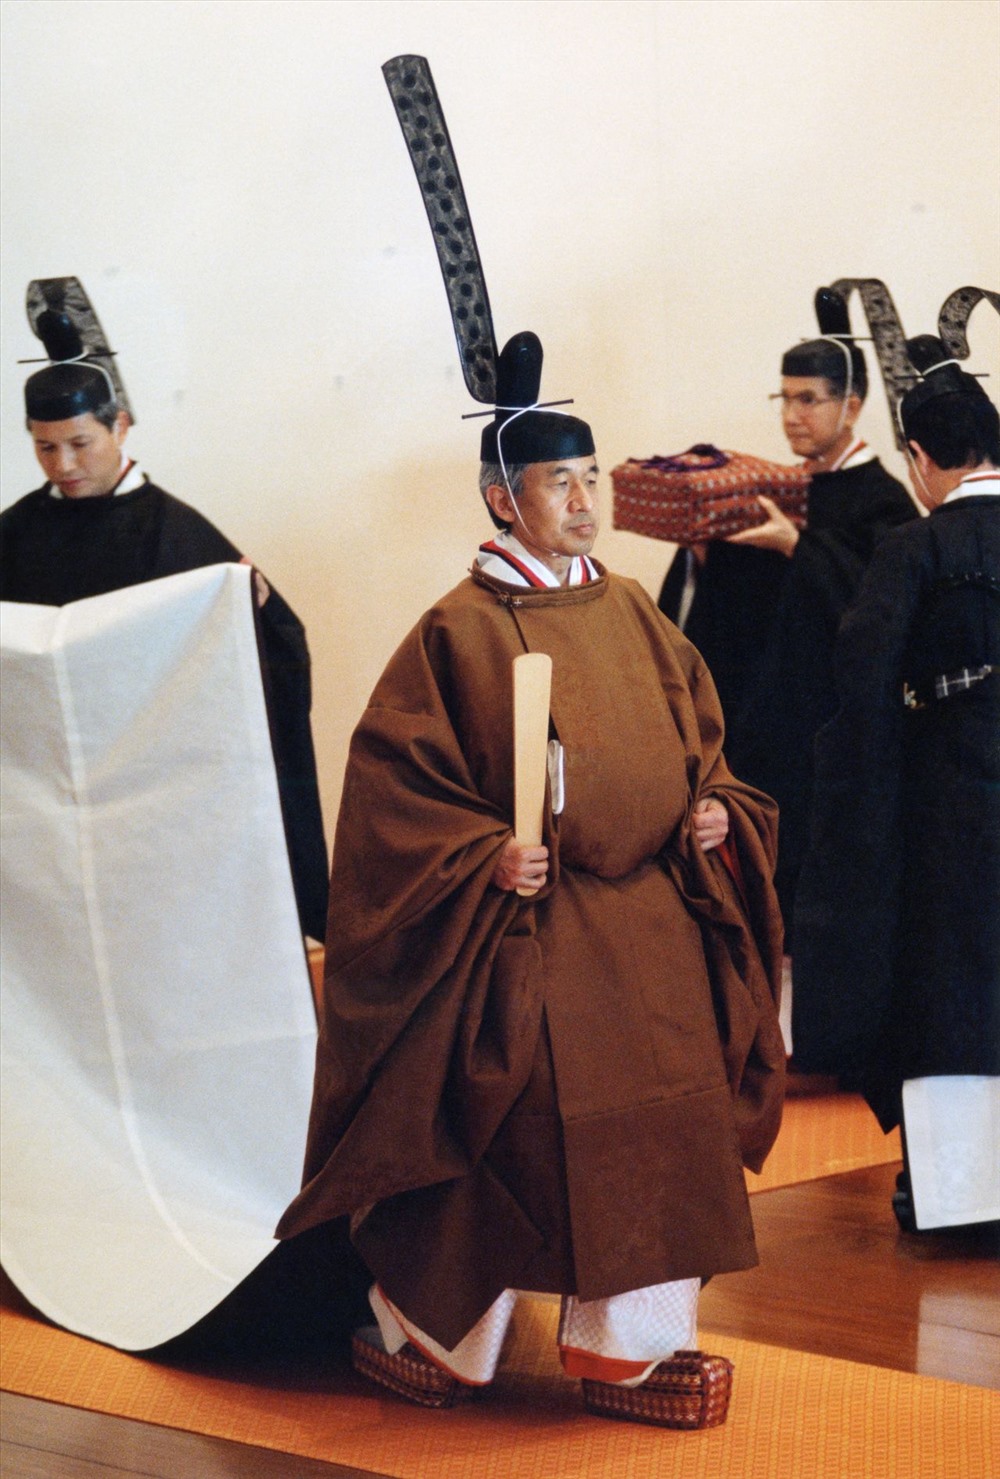 Nhật hoàng Akihito tại Matsu-no-ma vào ngày 12.11.1990. Nhật hoàng đang cầm trên tay một Shaku hay thẻ lễ nghi. Ảnh: Jiji.